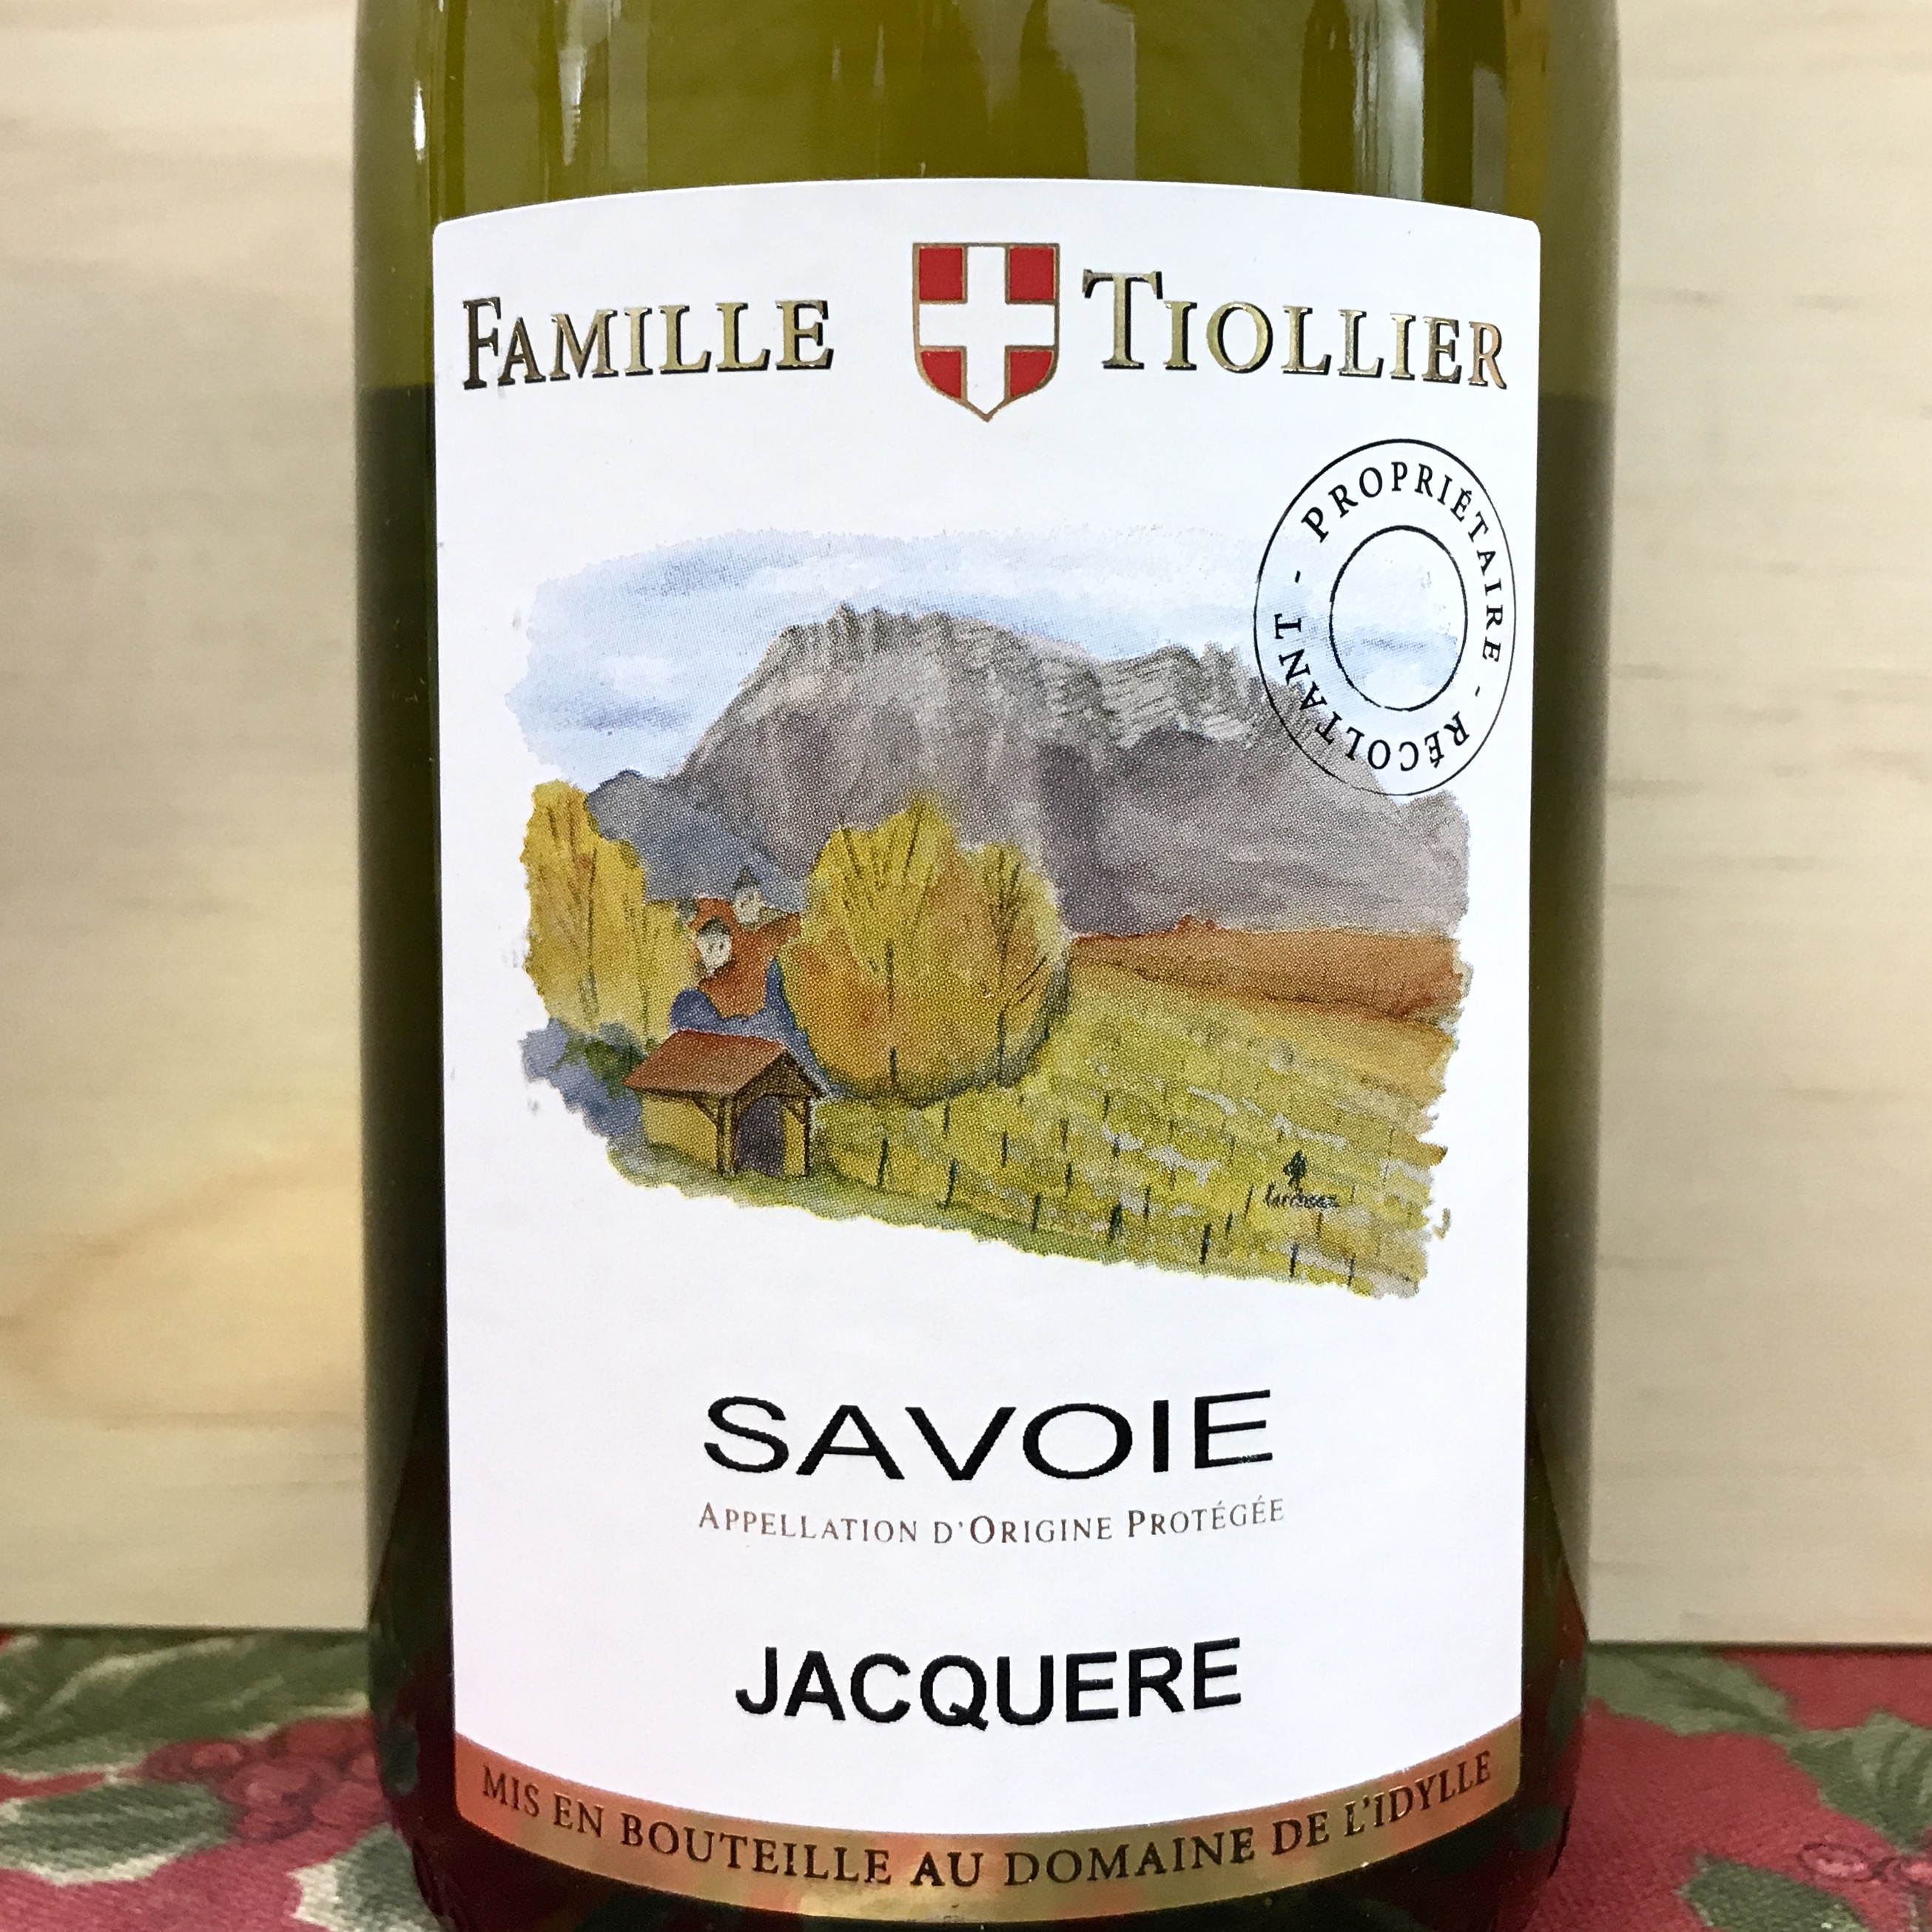 Domaine de L'Idlylle Jaquere Savoie 2018